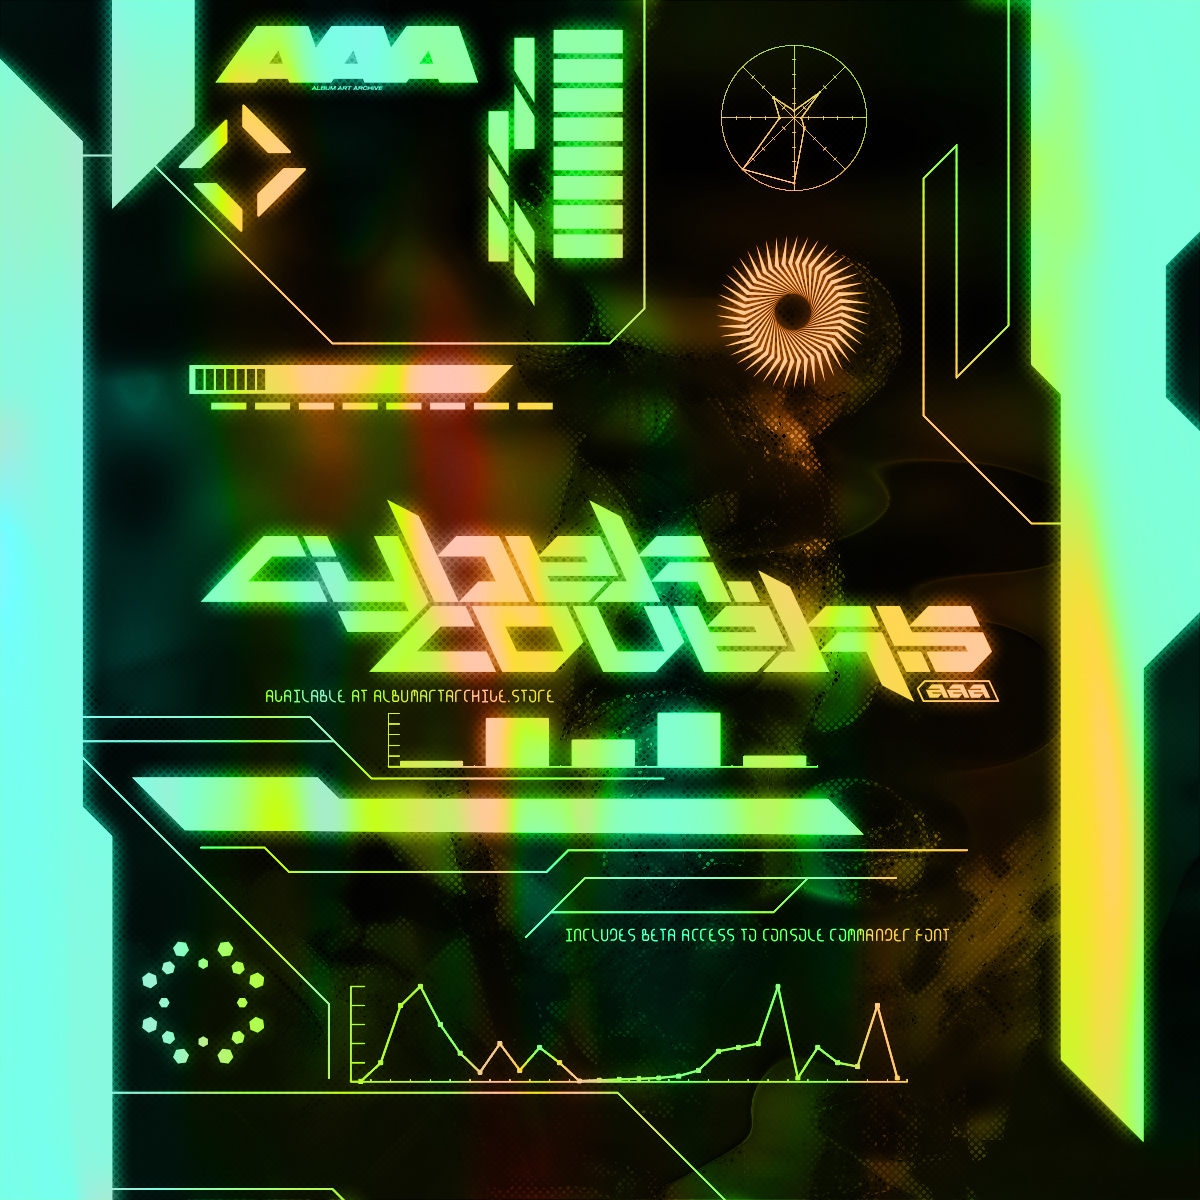 430多款潮流炫酷音乐专辑CD封面HUD元素设计素材套装 AlbumArtArchive – Cybercovers